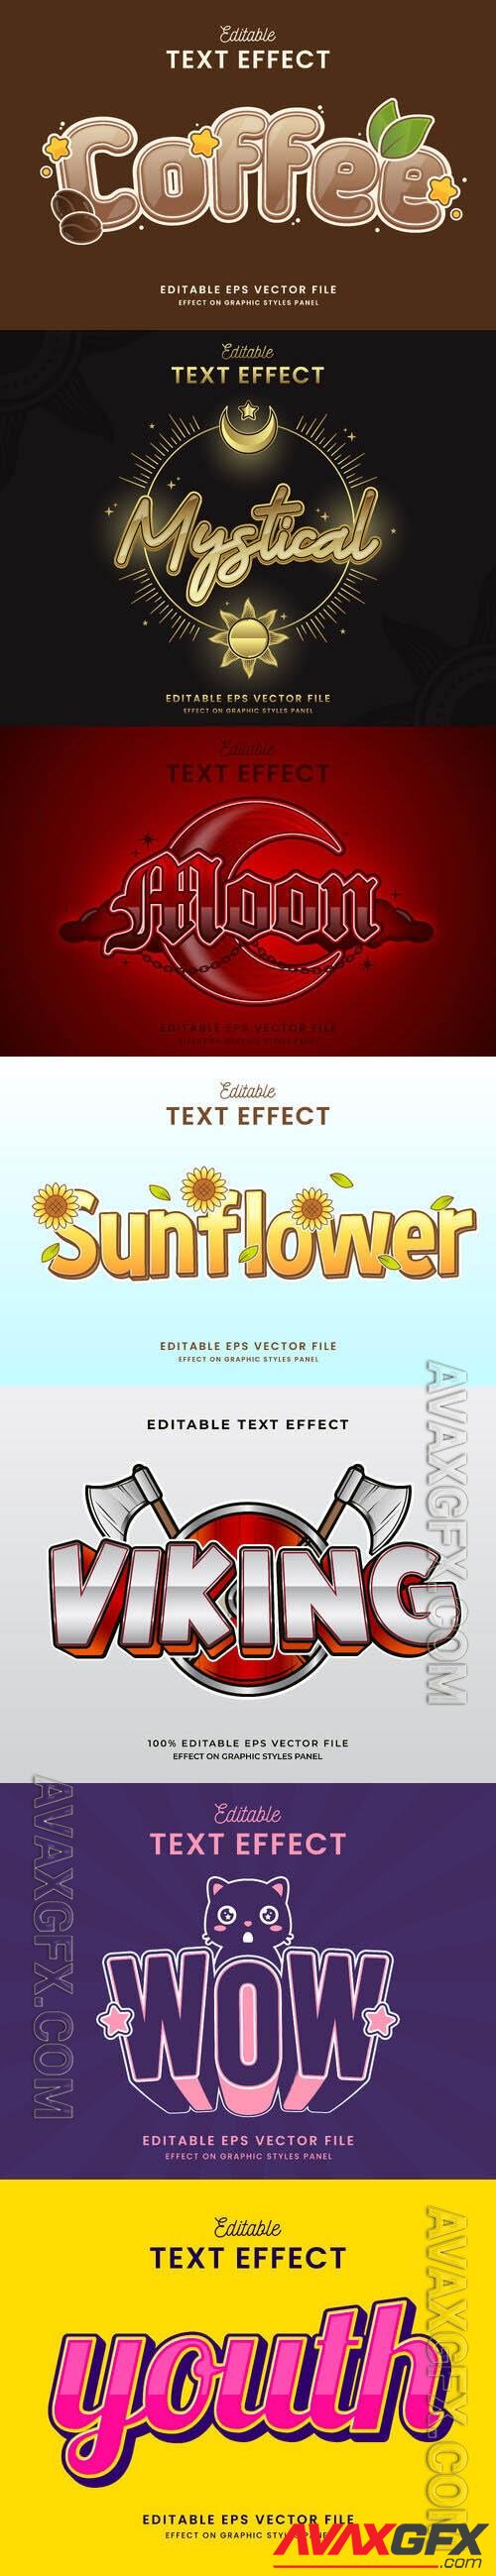 Vector 3d text editable, text effect font vol 170